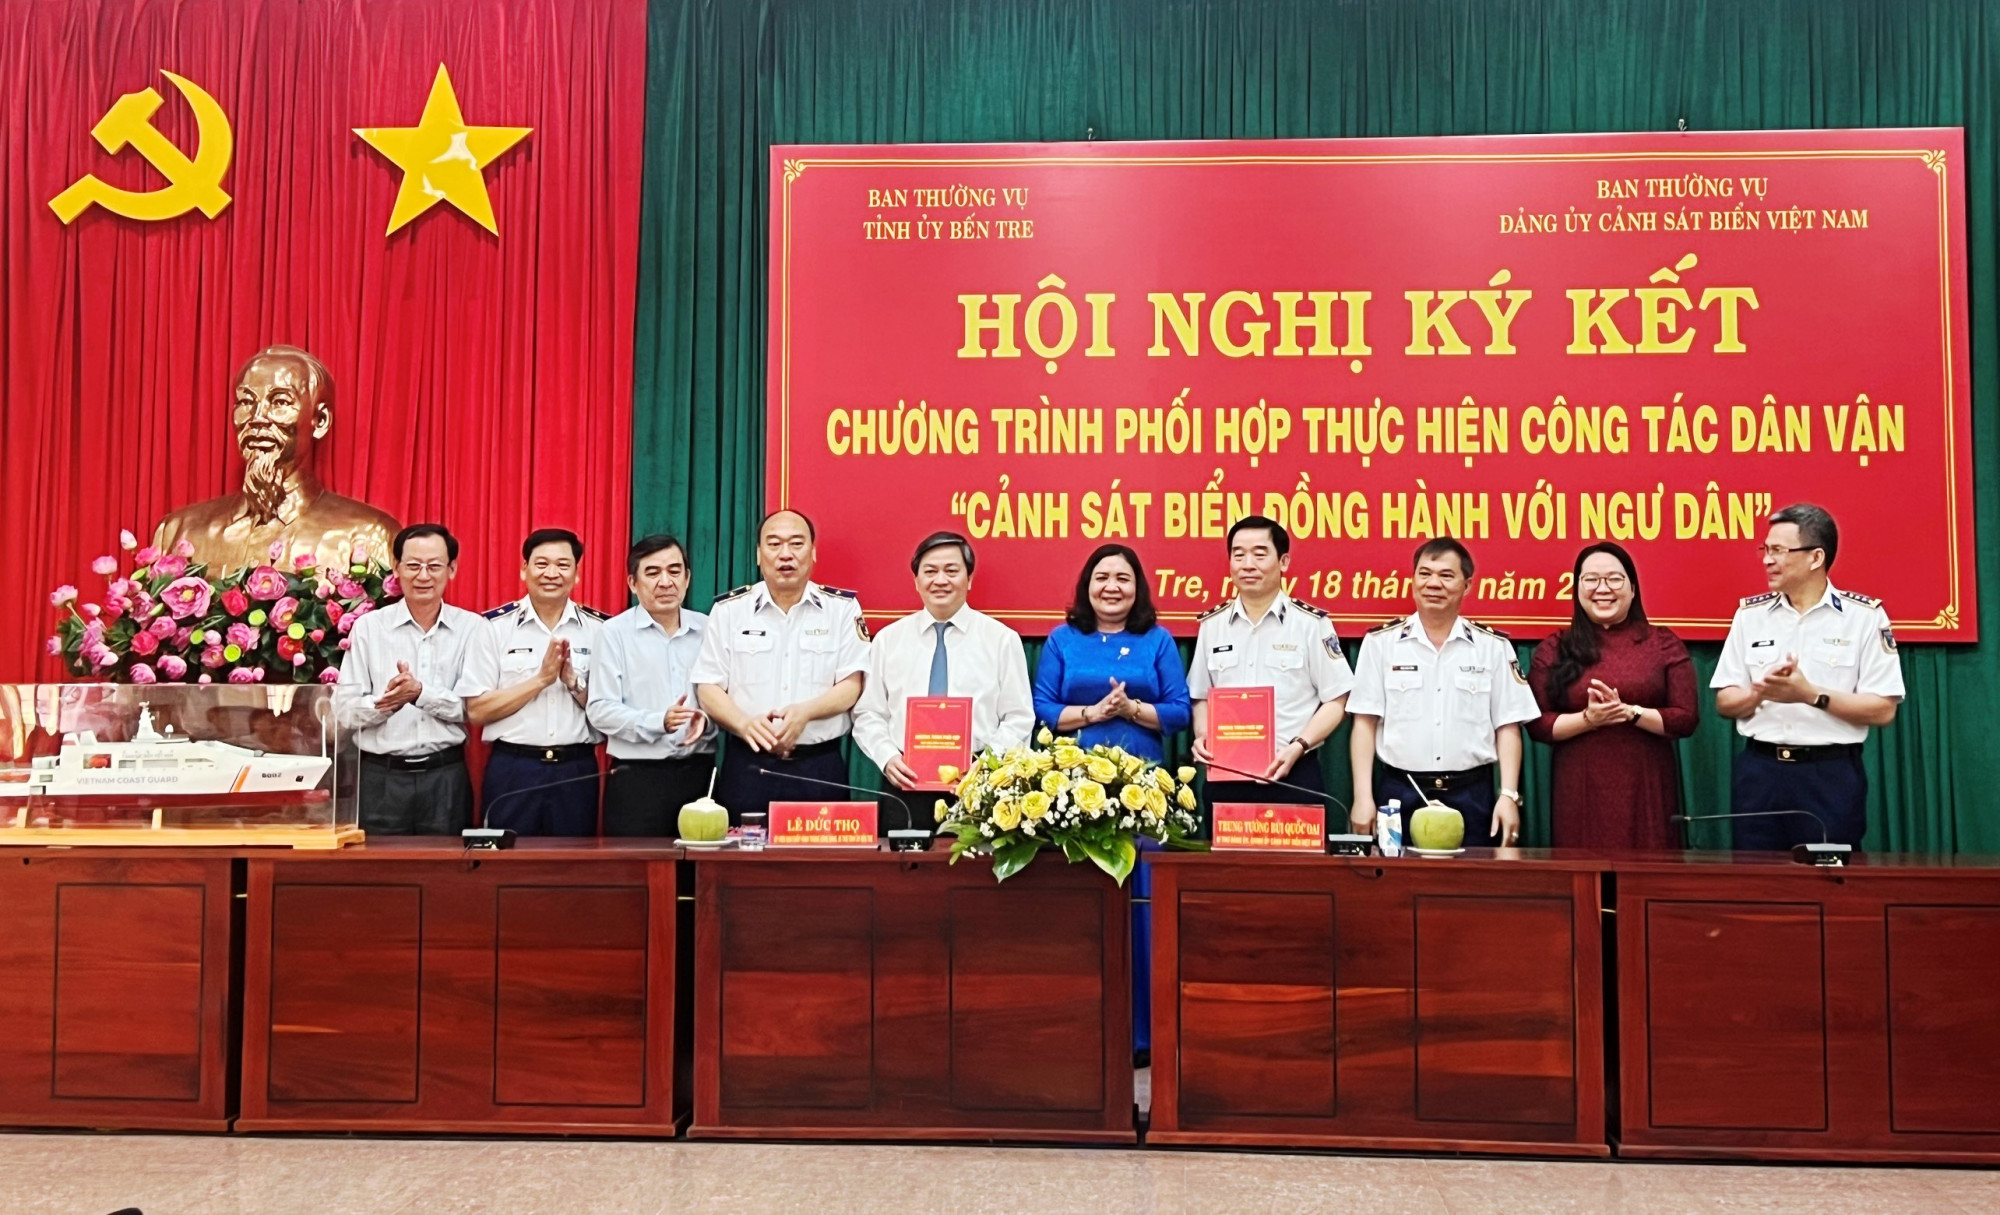 Lãnh đạo Cảnh sát biển Việt Nam và tỉnh Bến Tre ký kết chương trình hợp tác “Cảnh sát biển đồng hành cùng ngư dân”.